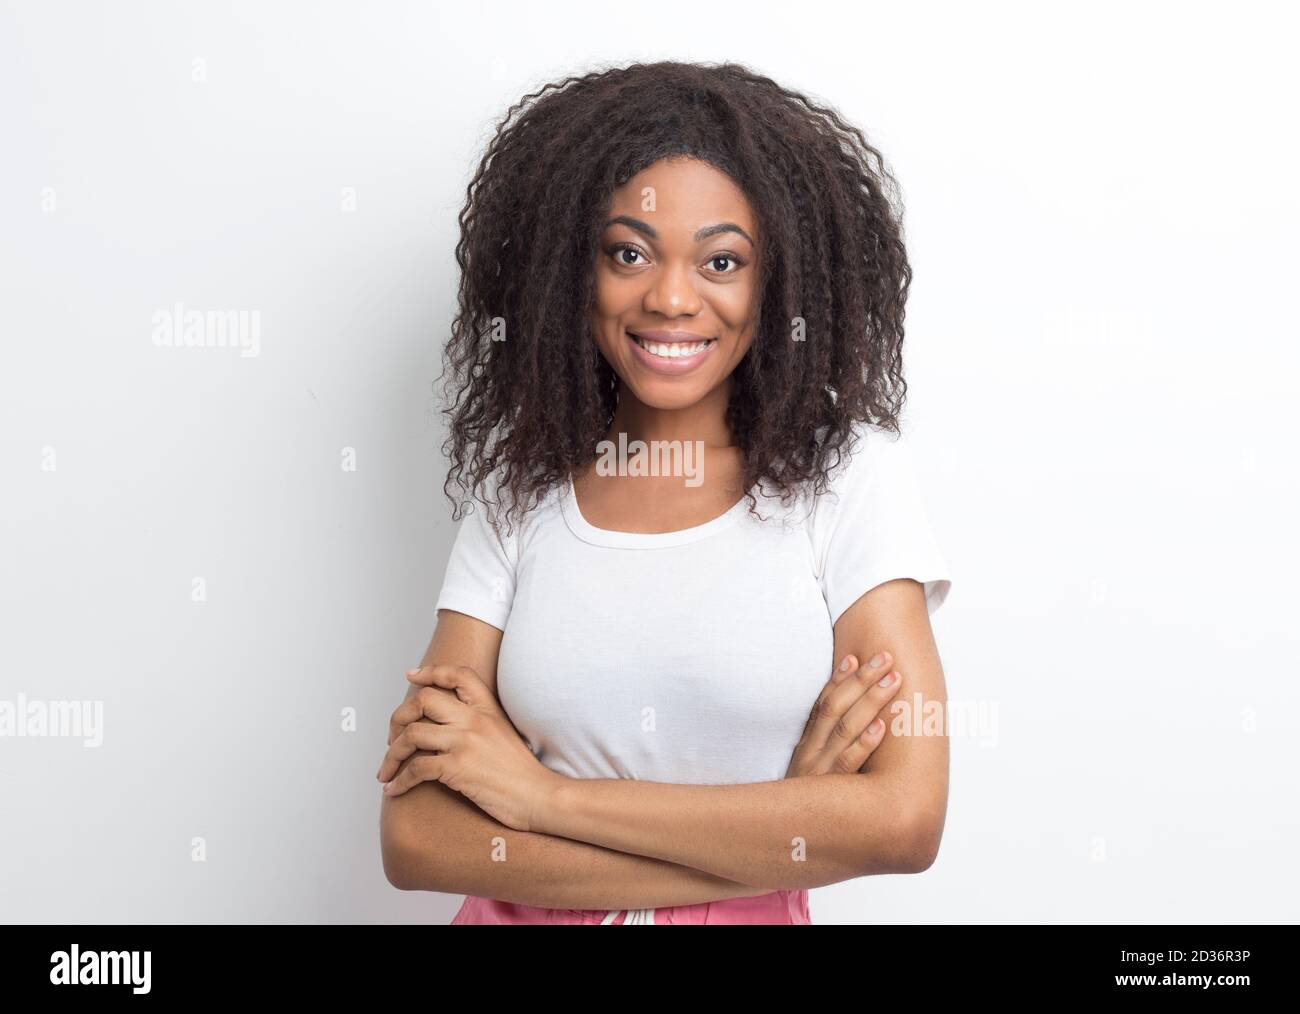 Lächelnde afroamerikanische junge Frau. Porträt eines glücklichen schwarzen Mädchen. Stockfoto